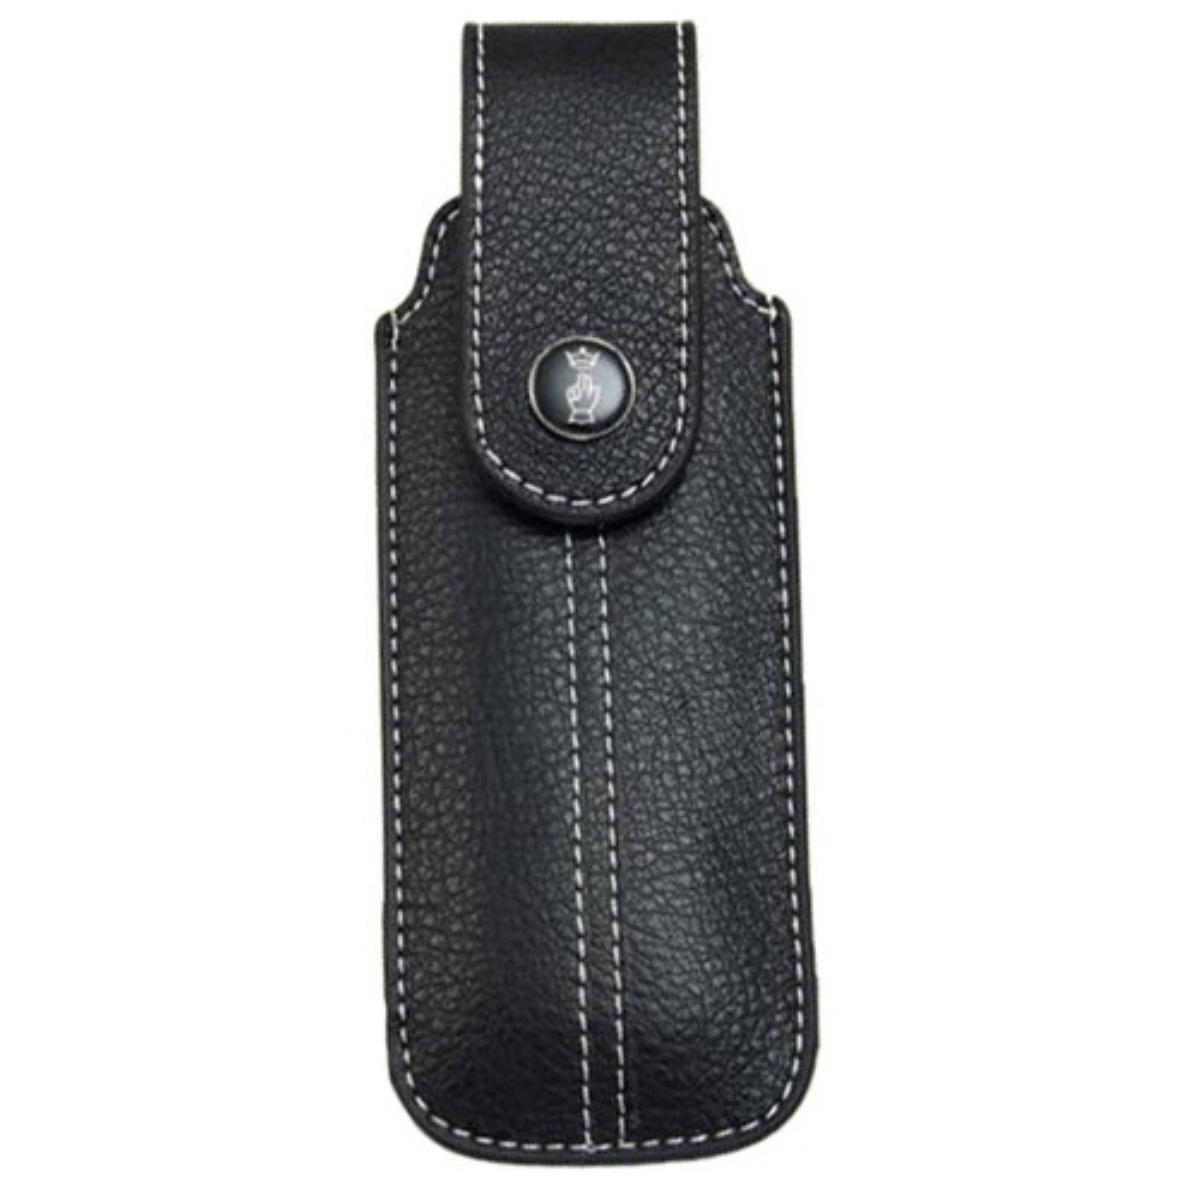 Чехол Chic black leather (натуральная кожа, размер № 7, 8, 9) OPINEL чехол chic black leather натуральная кожа размер 7 8 9 opinel